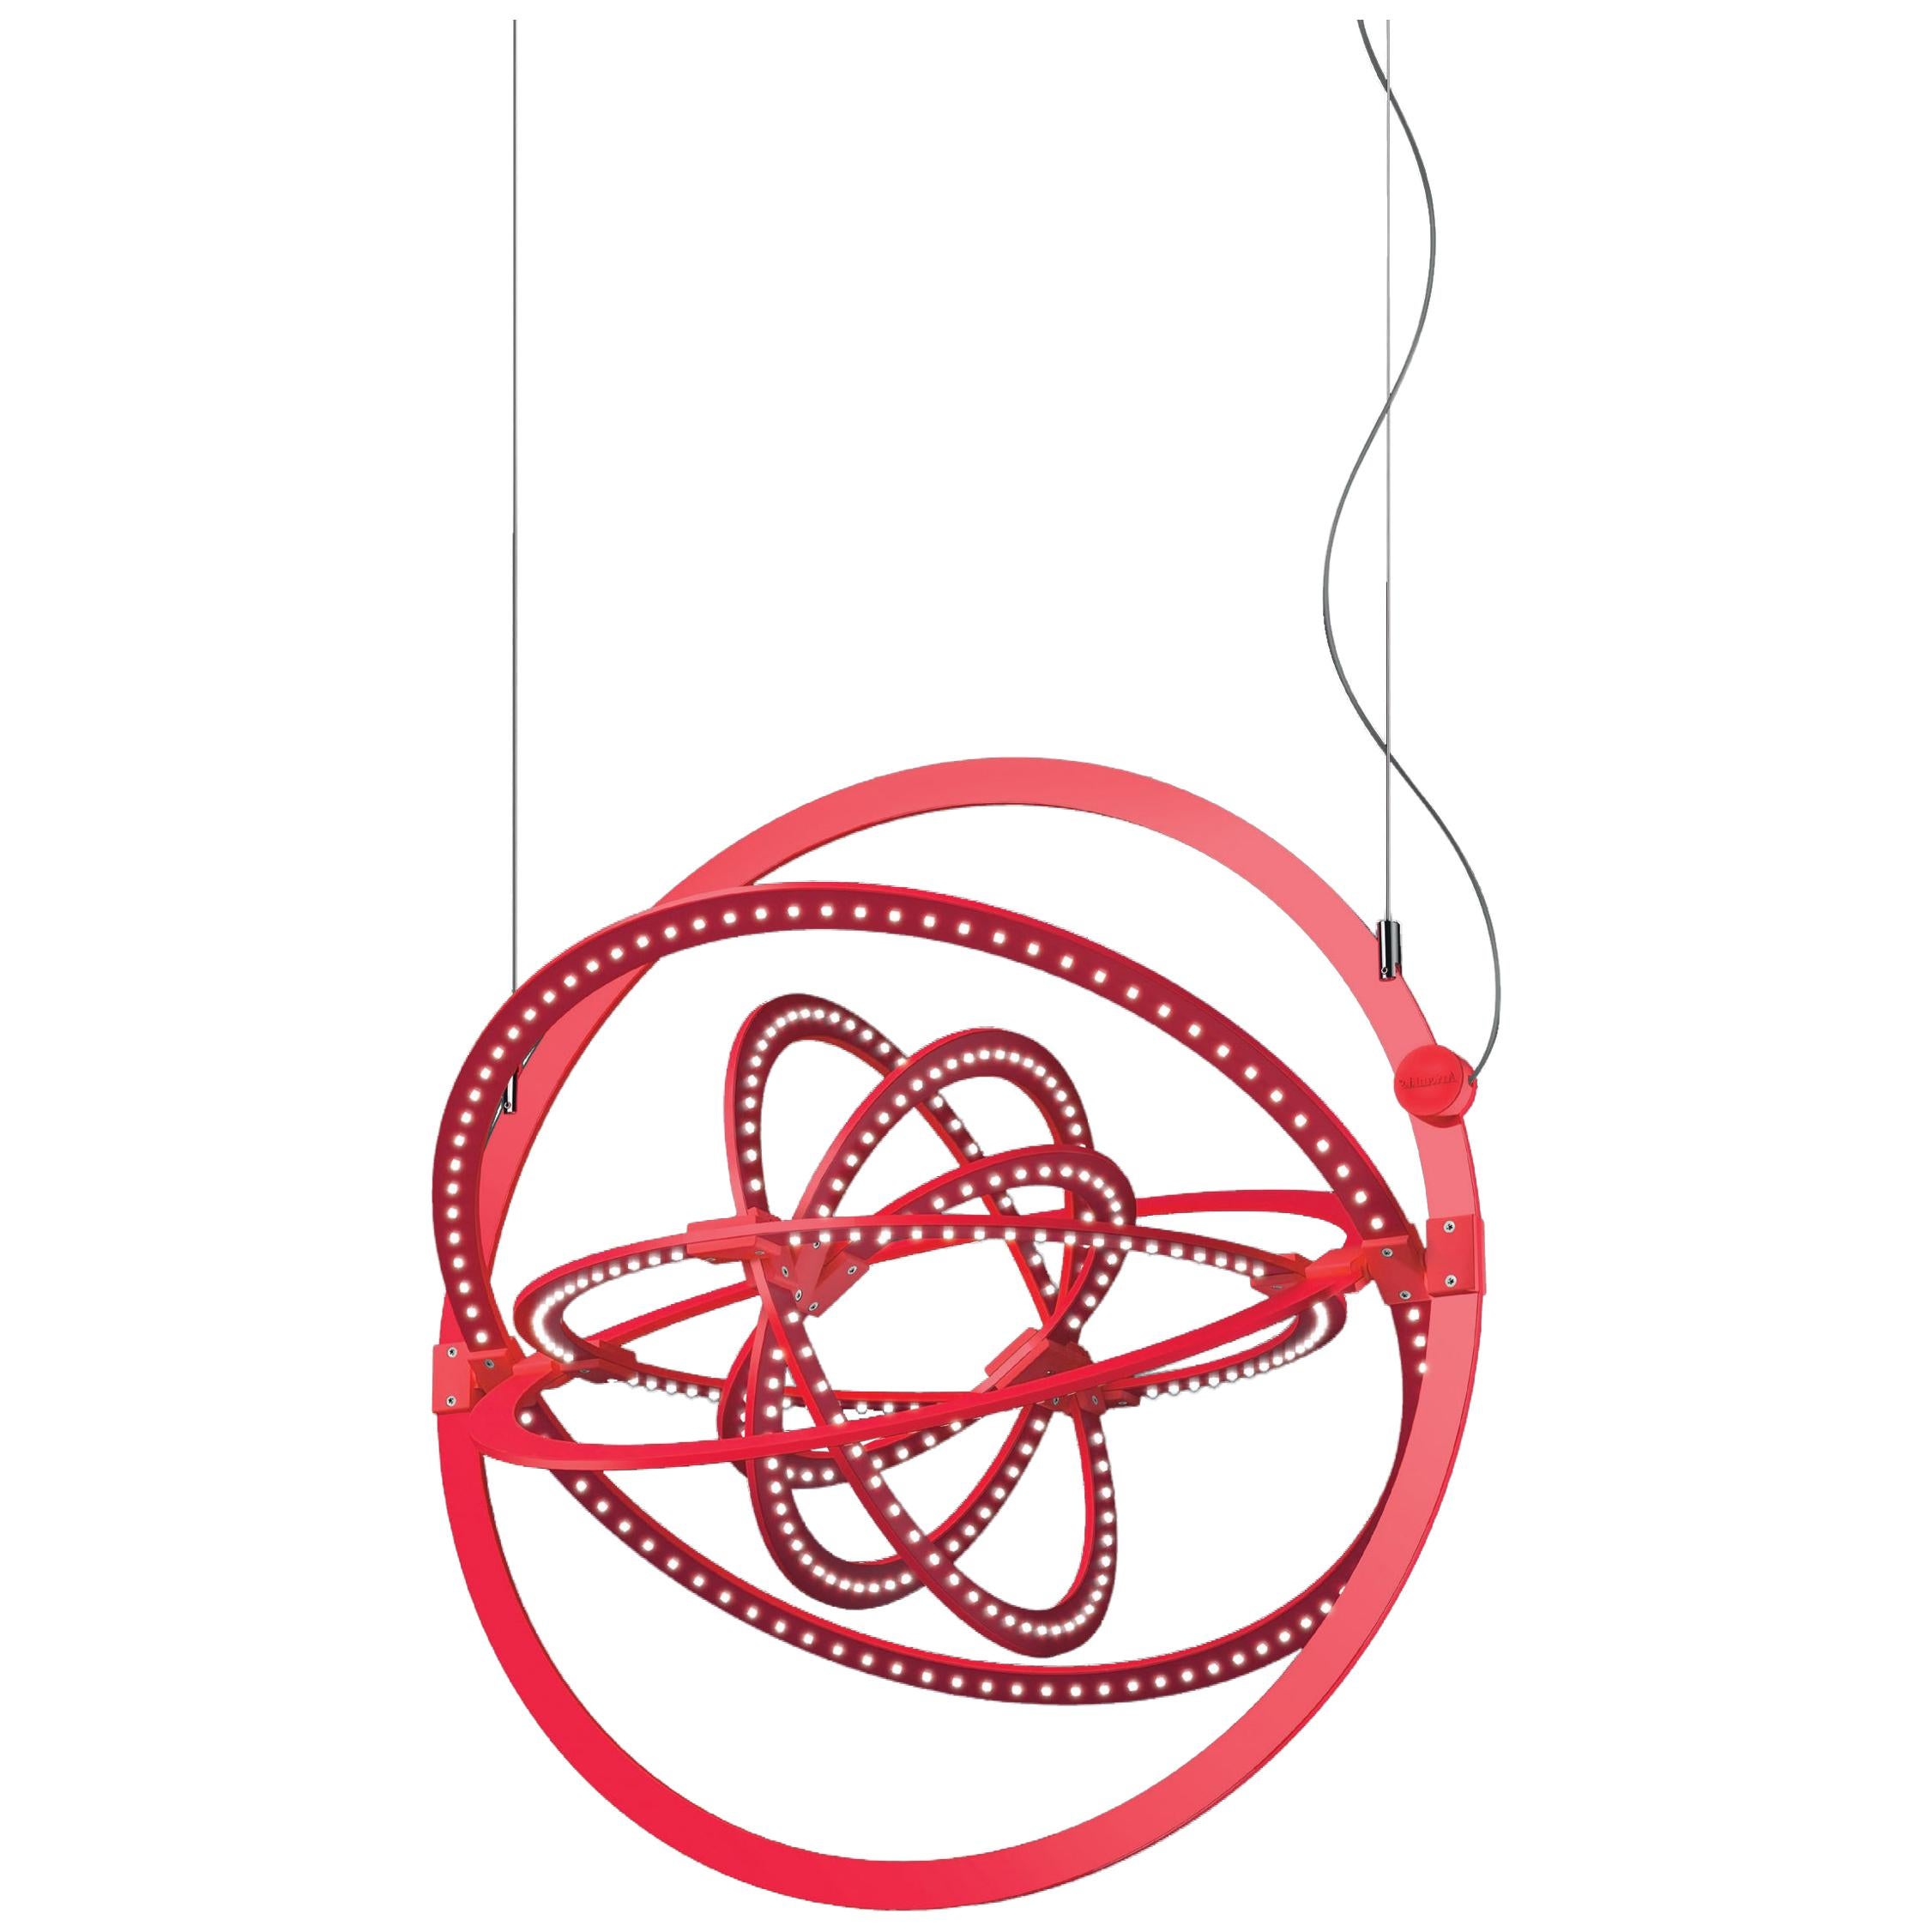 Artemide Copernico 500 Suspension Light in Red by Carlotta de Bevilacqua For Sale